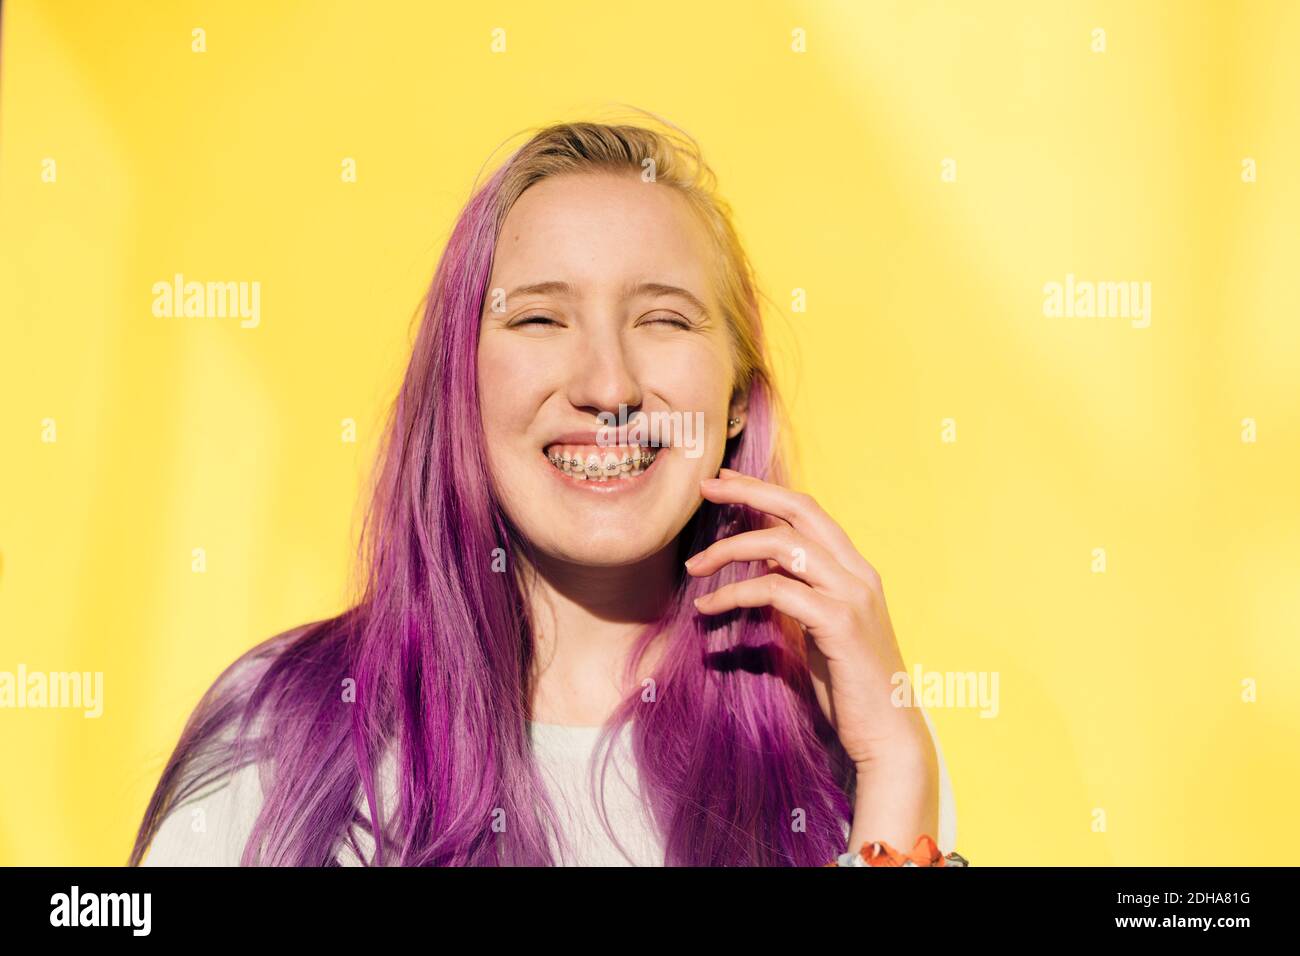 Portrait von lächelndem Teenager-Mädchen, das vor gelbem Hintergrund steht Stockfoto